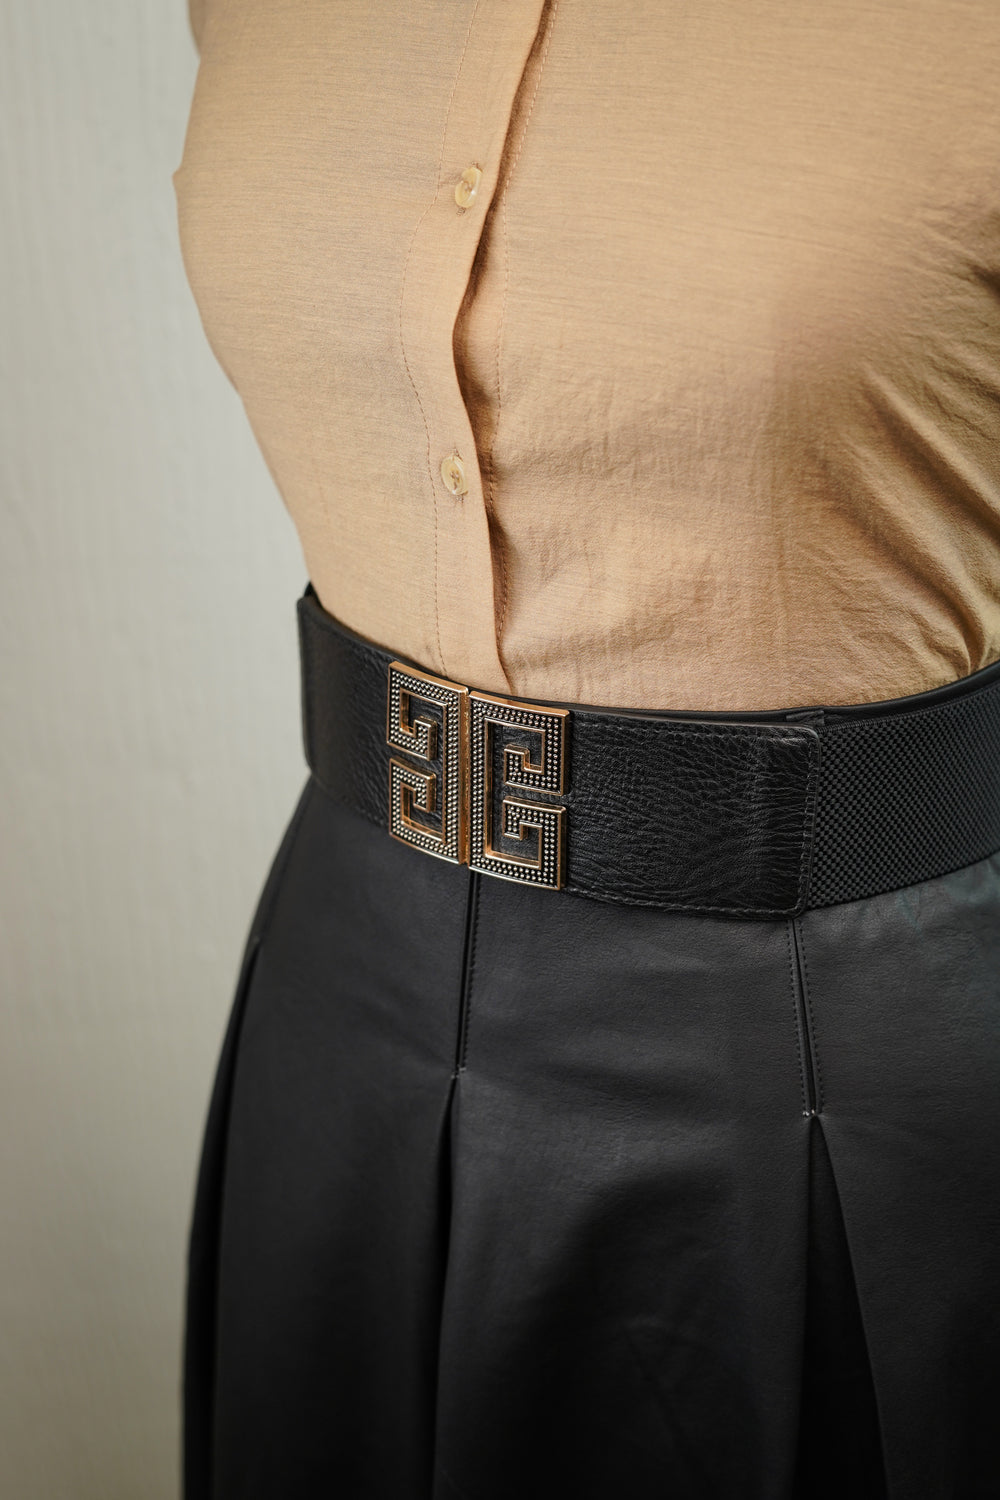 Elastic belt with interlock buckle for women